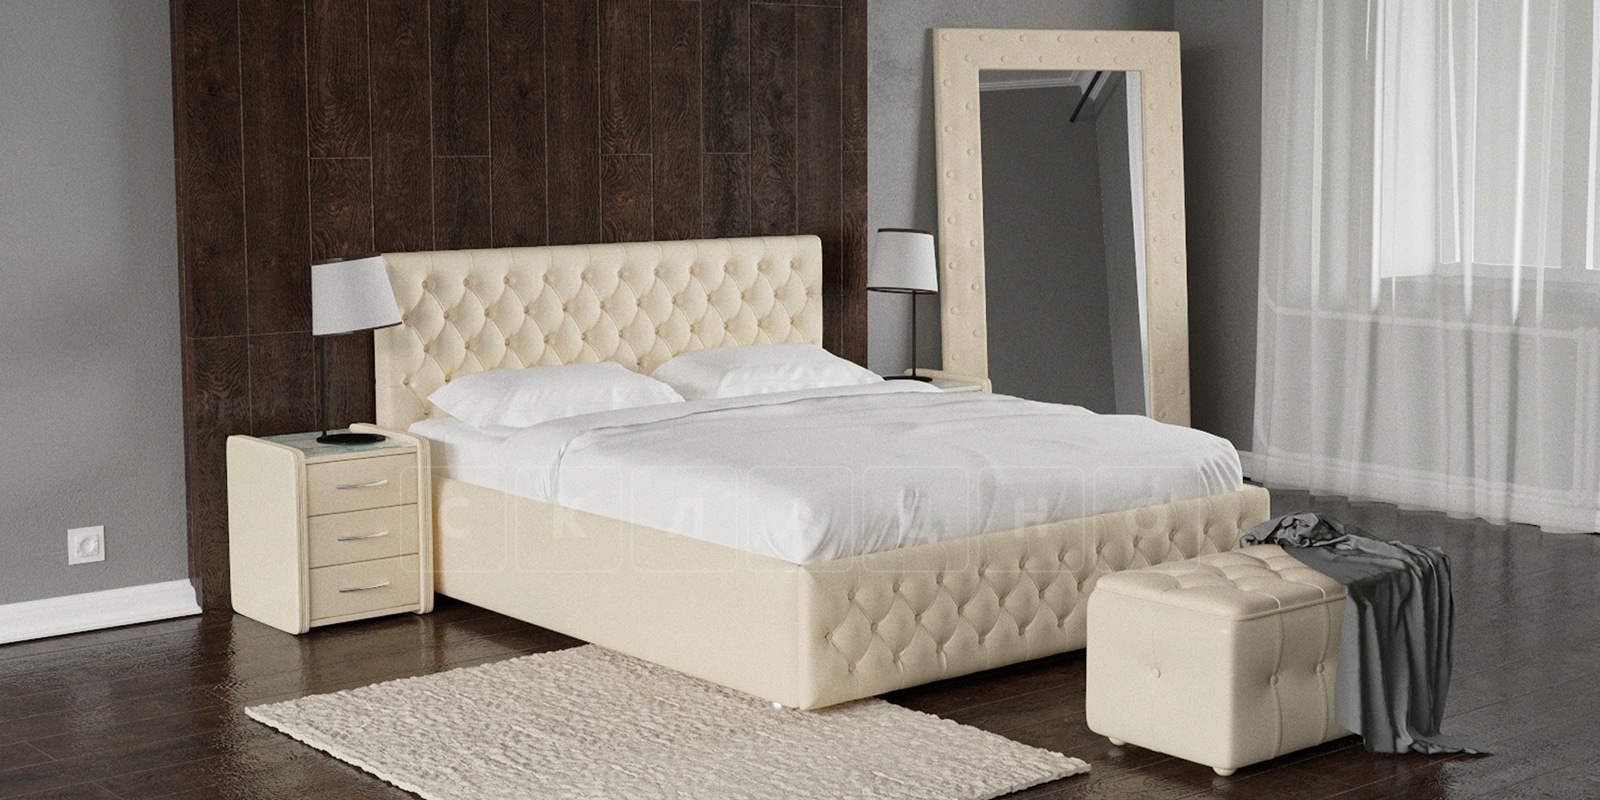 Мягкая кровать Малибу 160см экокожа бежевого цвета вариант 4-2 фото 1 | интернет-магазин Складно